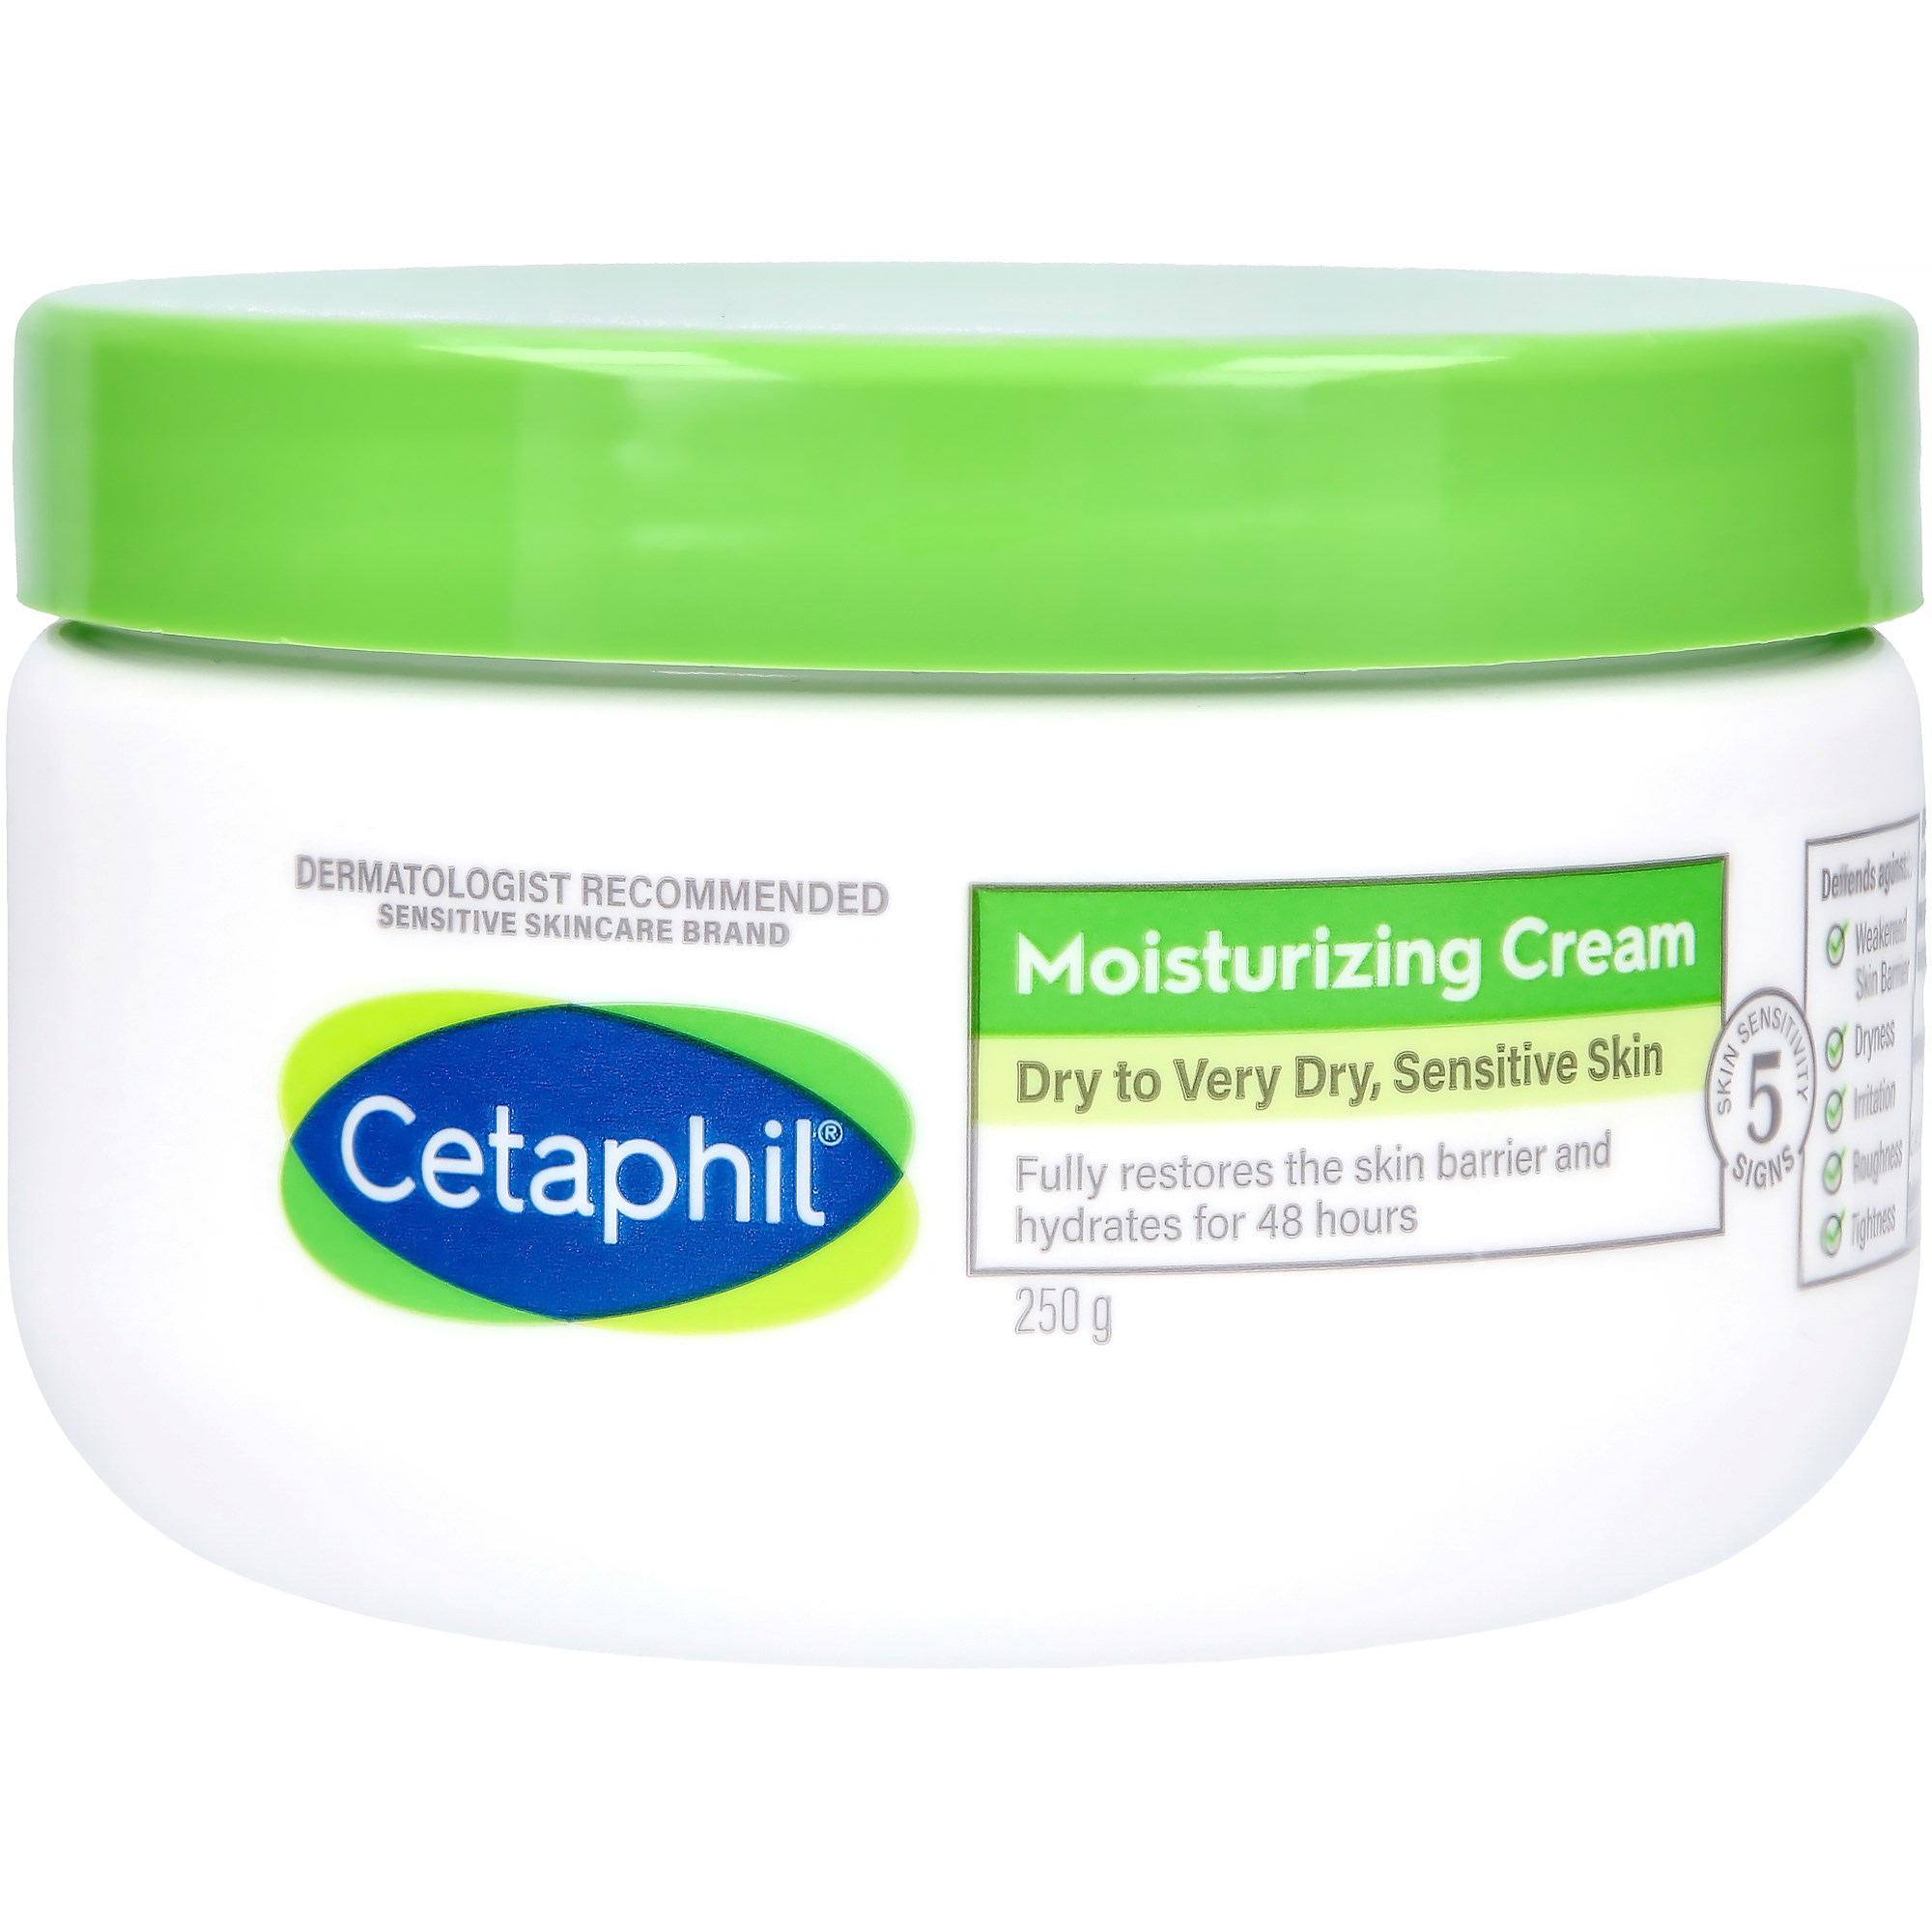 Bilde av Cetaphil Moisturizing Cream 250 G